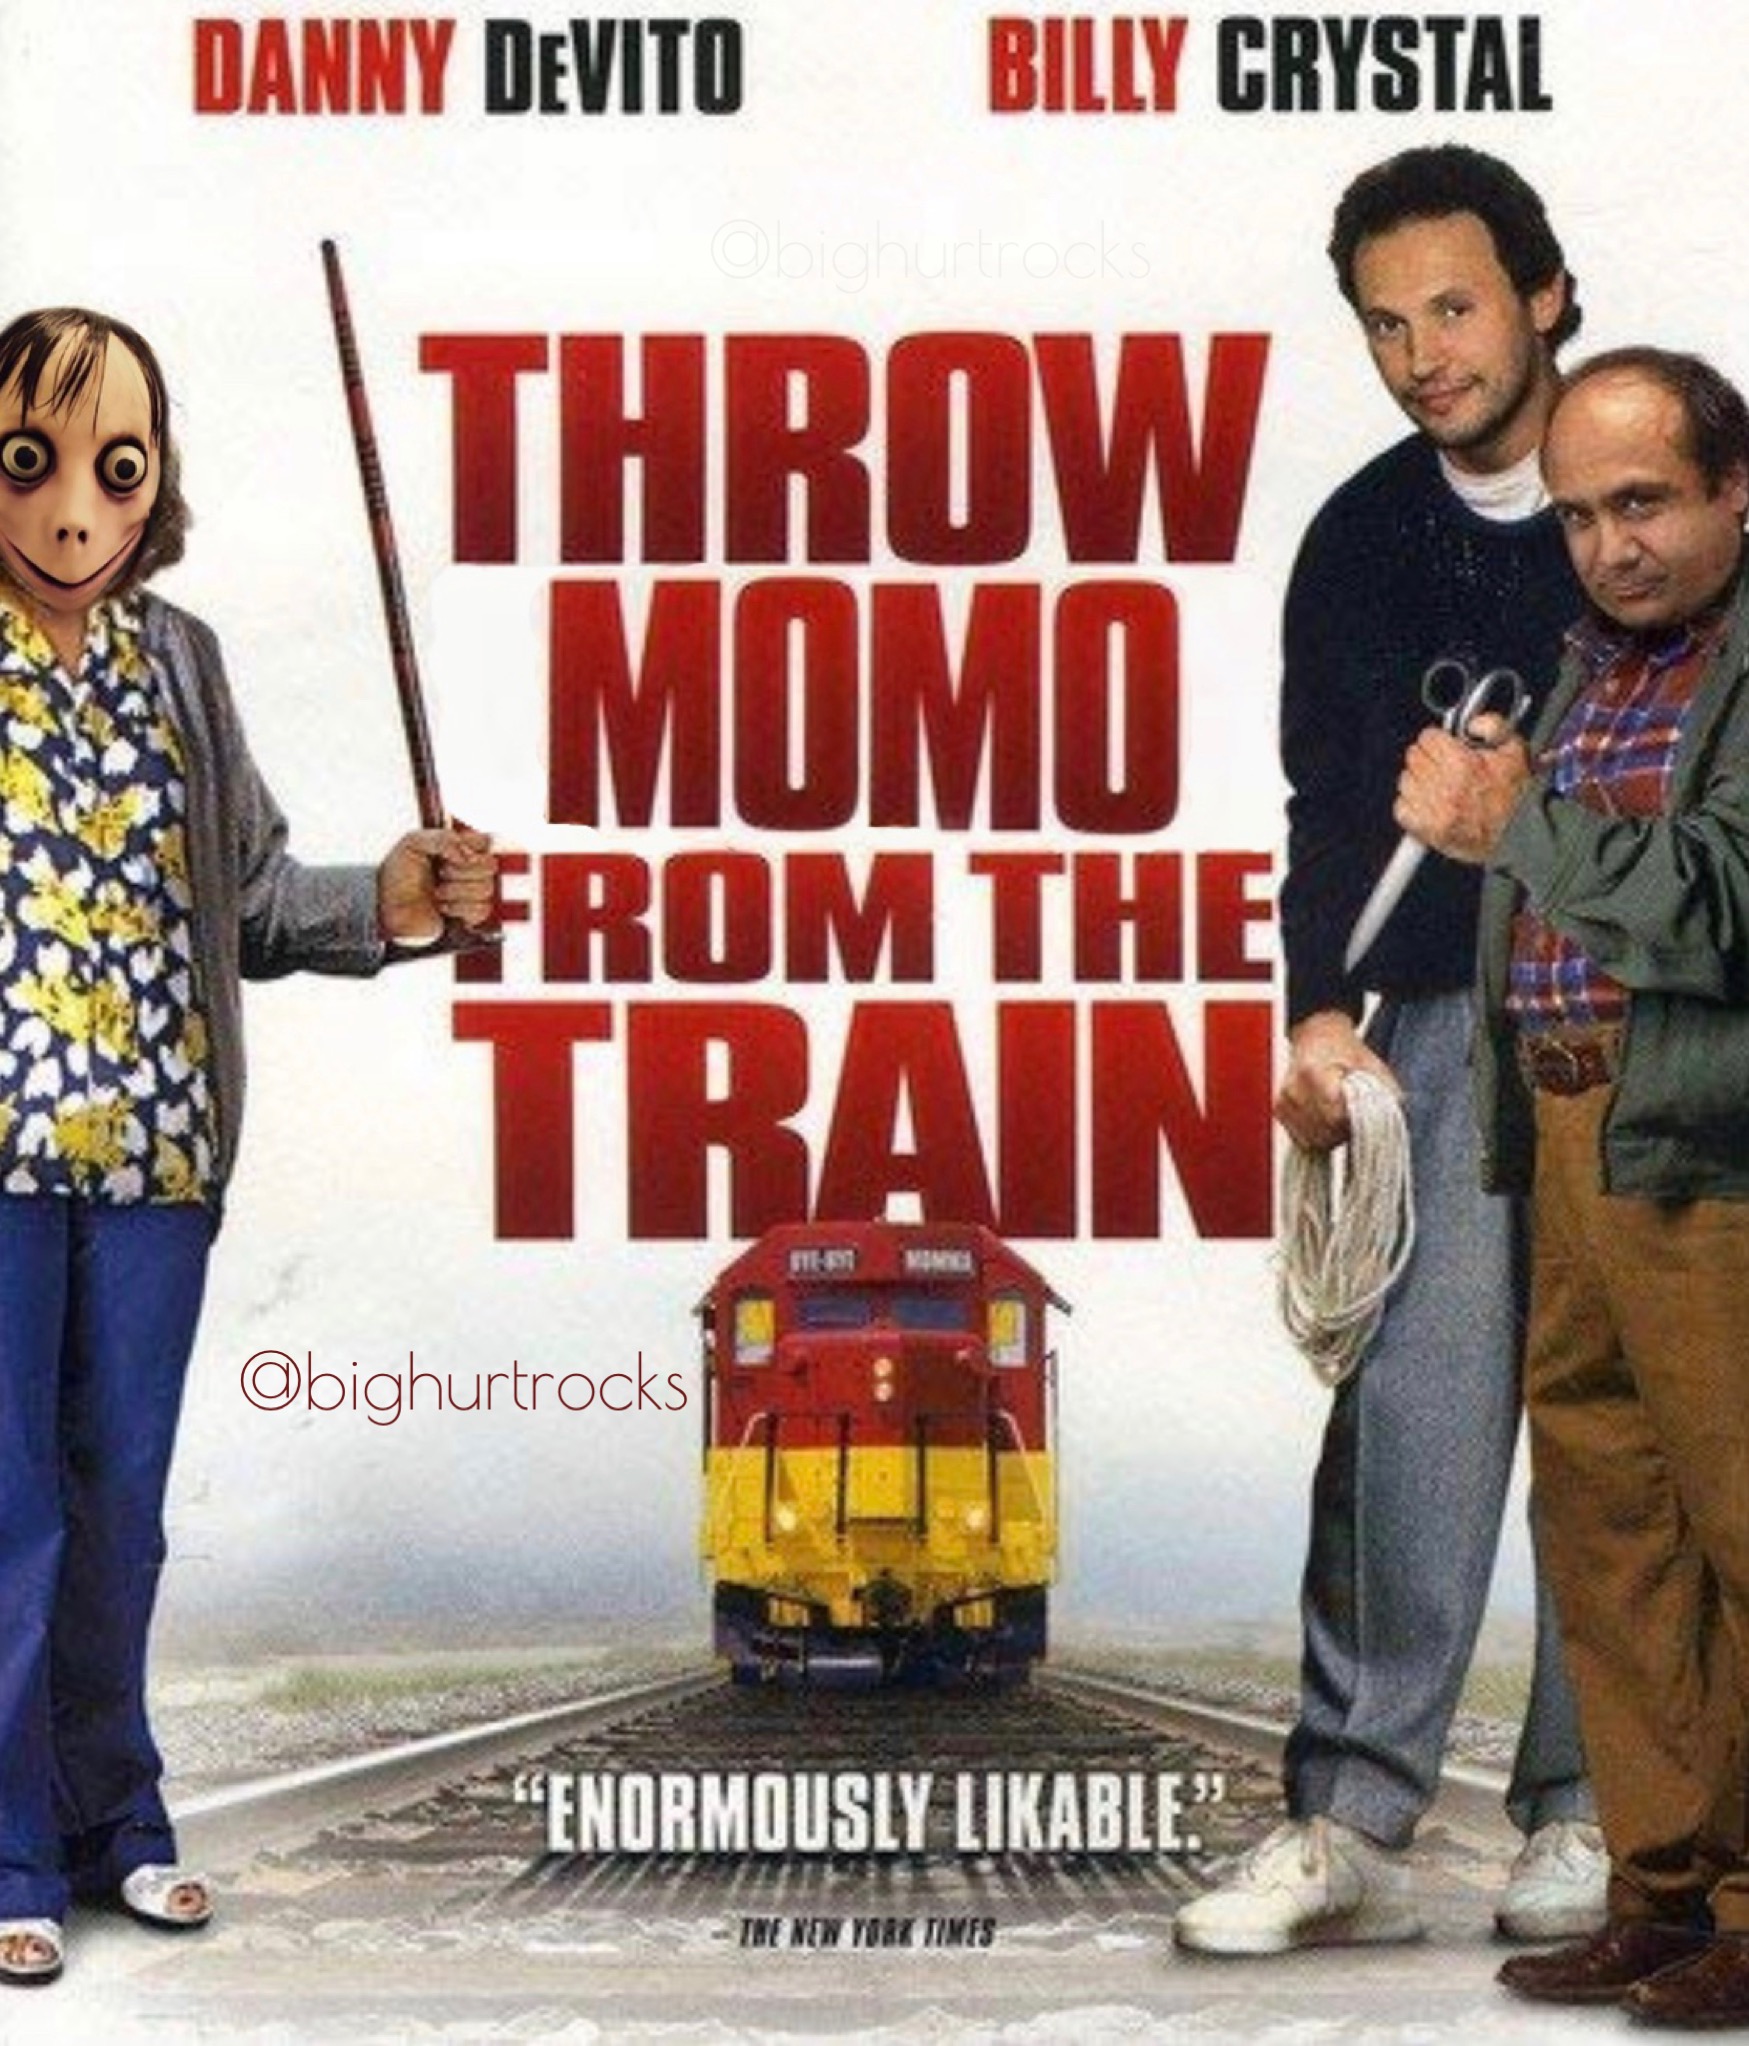 "Throw Momo from the Train" by bighurtrocks